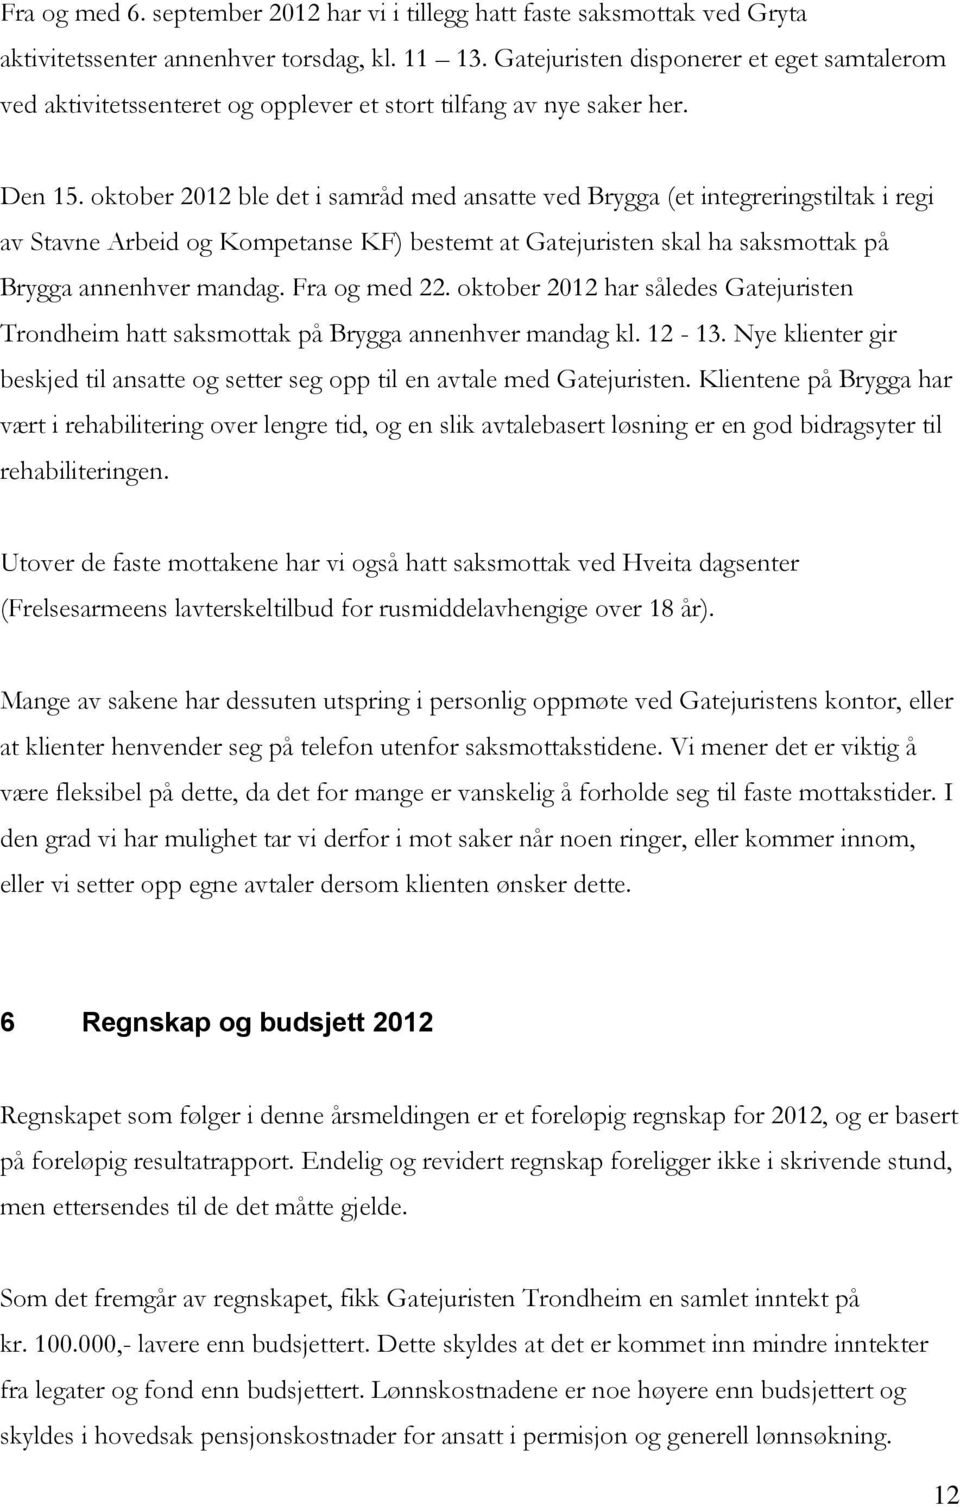 oktober 2012 ble det i samråd med ansatte ved Brygga (et integreringstiltak i regi av Stavne Arbeid og Kompetanse KF) bestemt at Gatejuristen skal ha saksmottak på Brygga annenhver mandag.